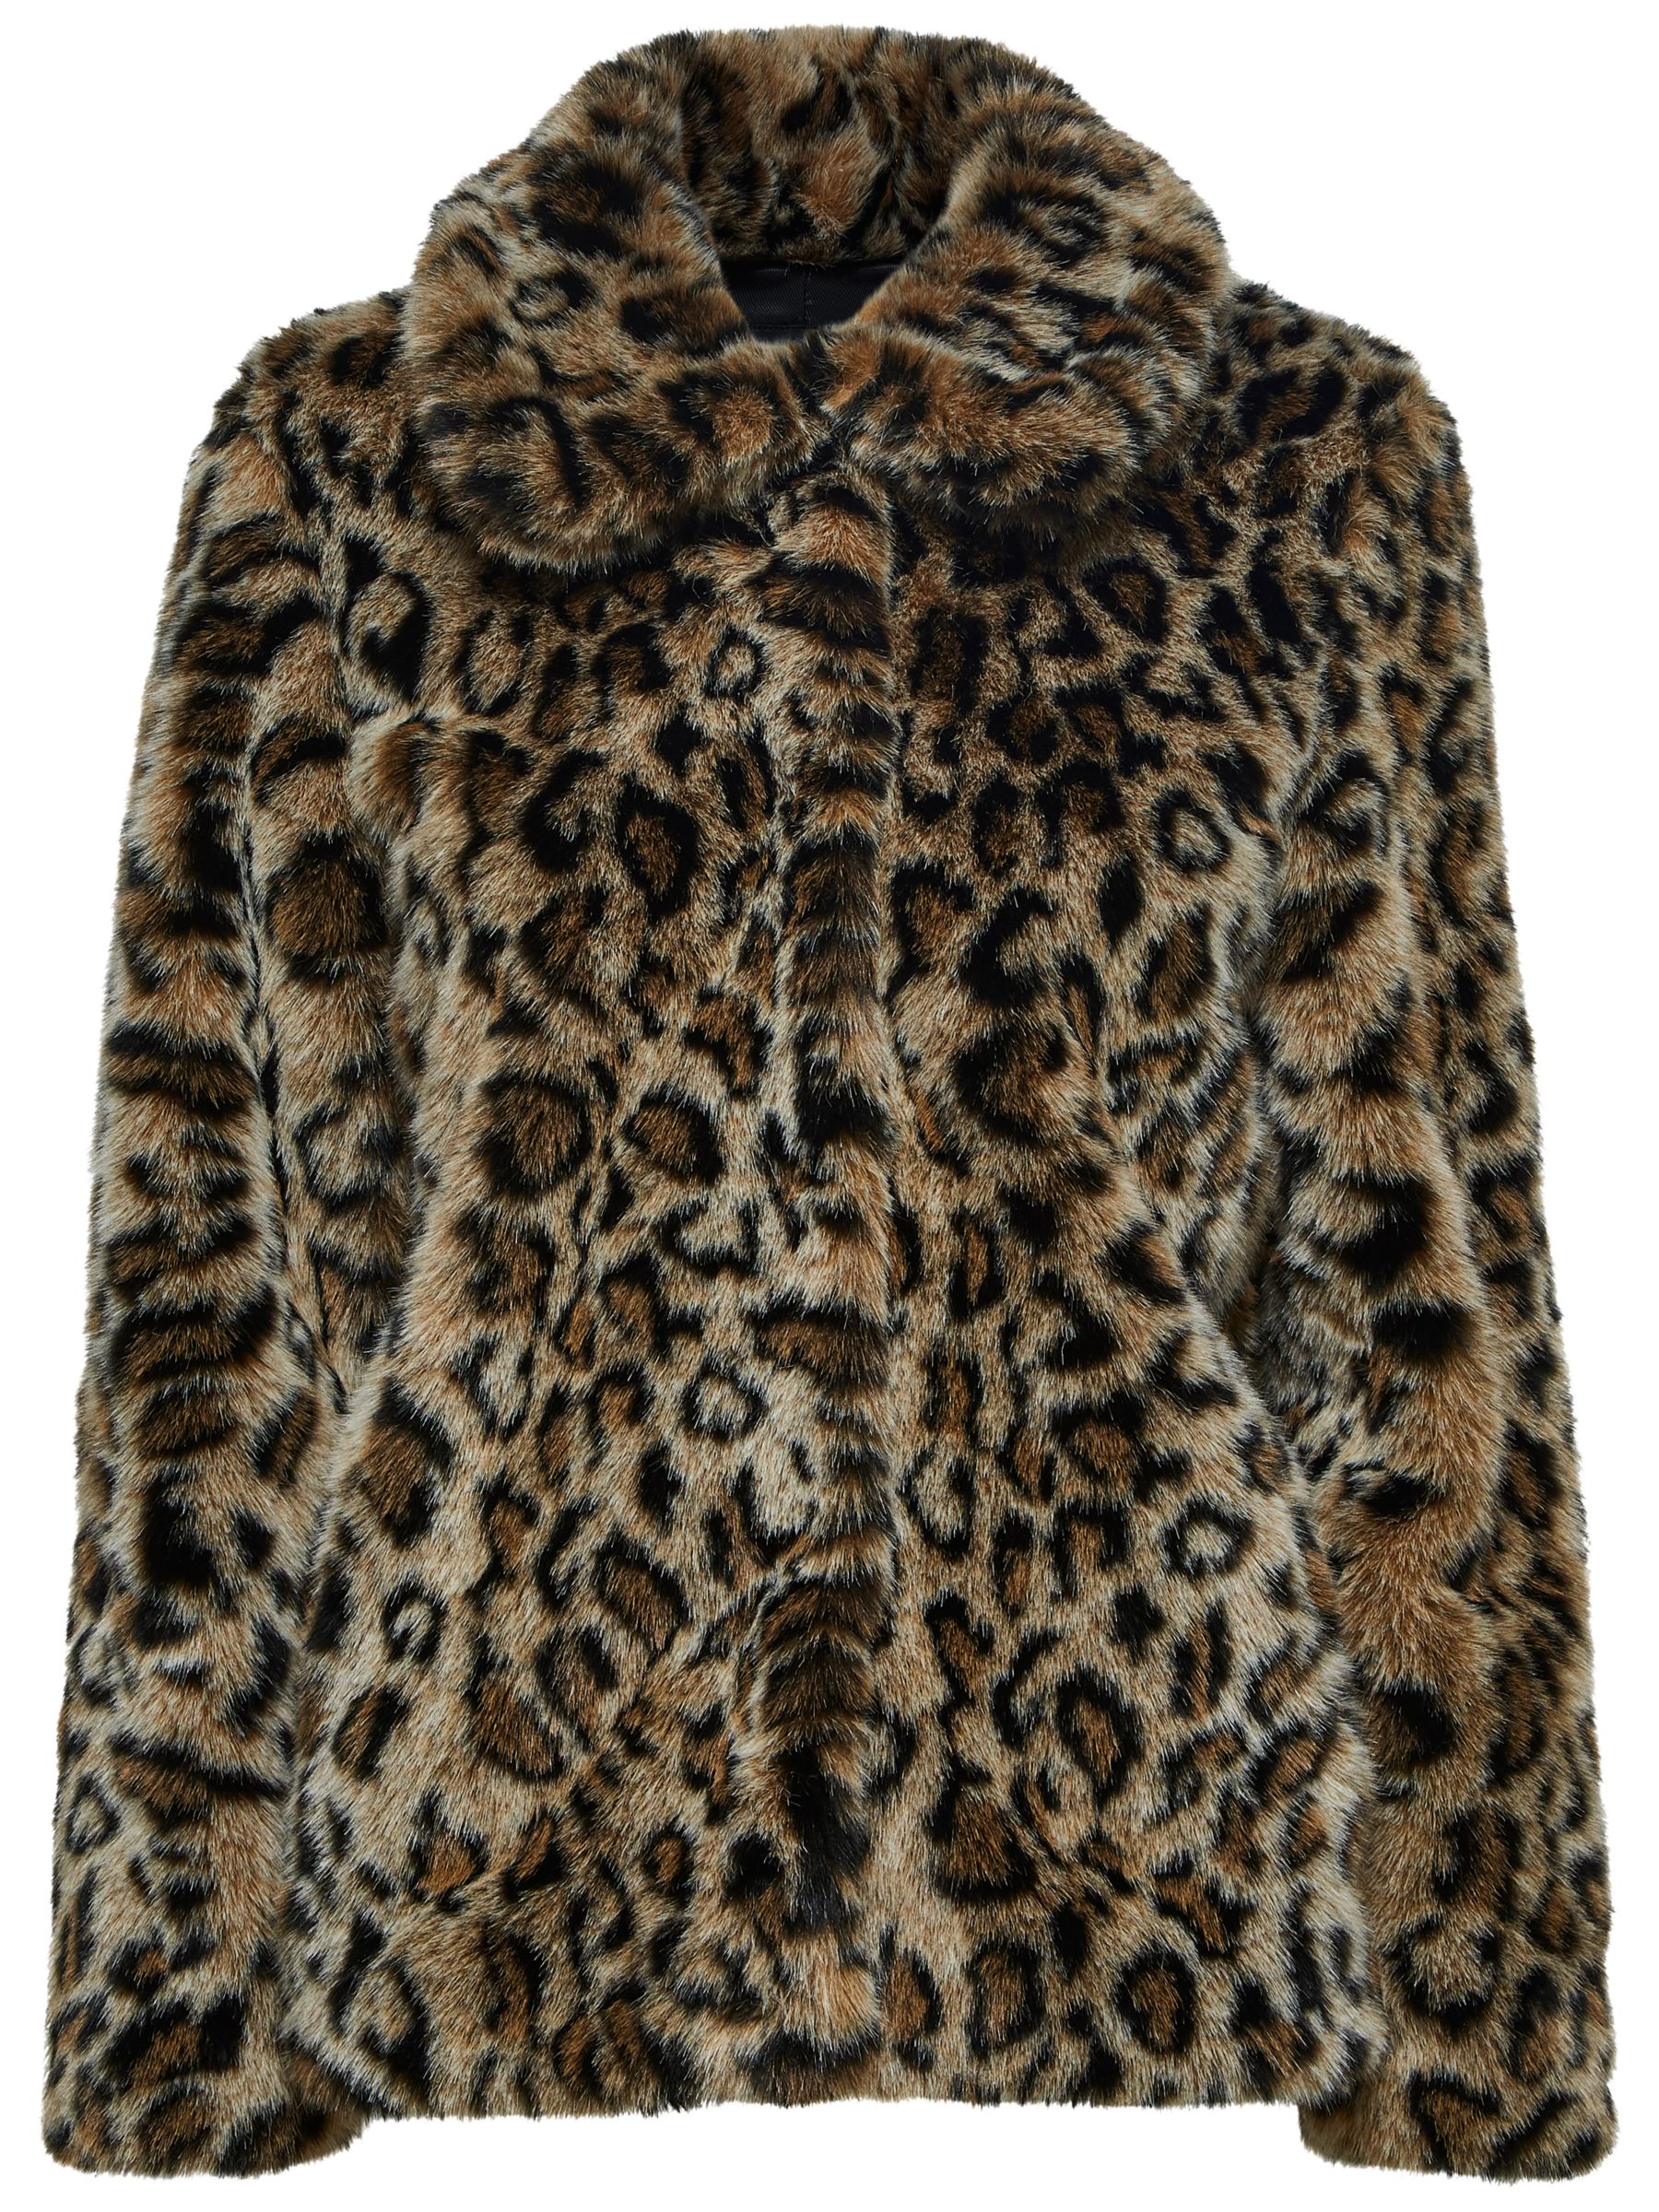 Selected Femme Faux Fur Leopard Print Coat, Black Leopard